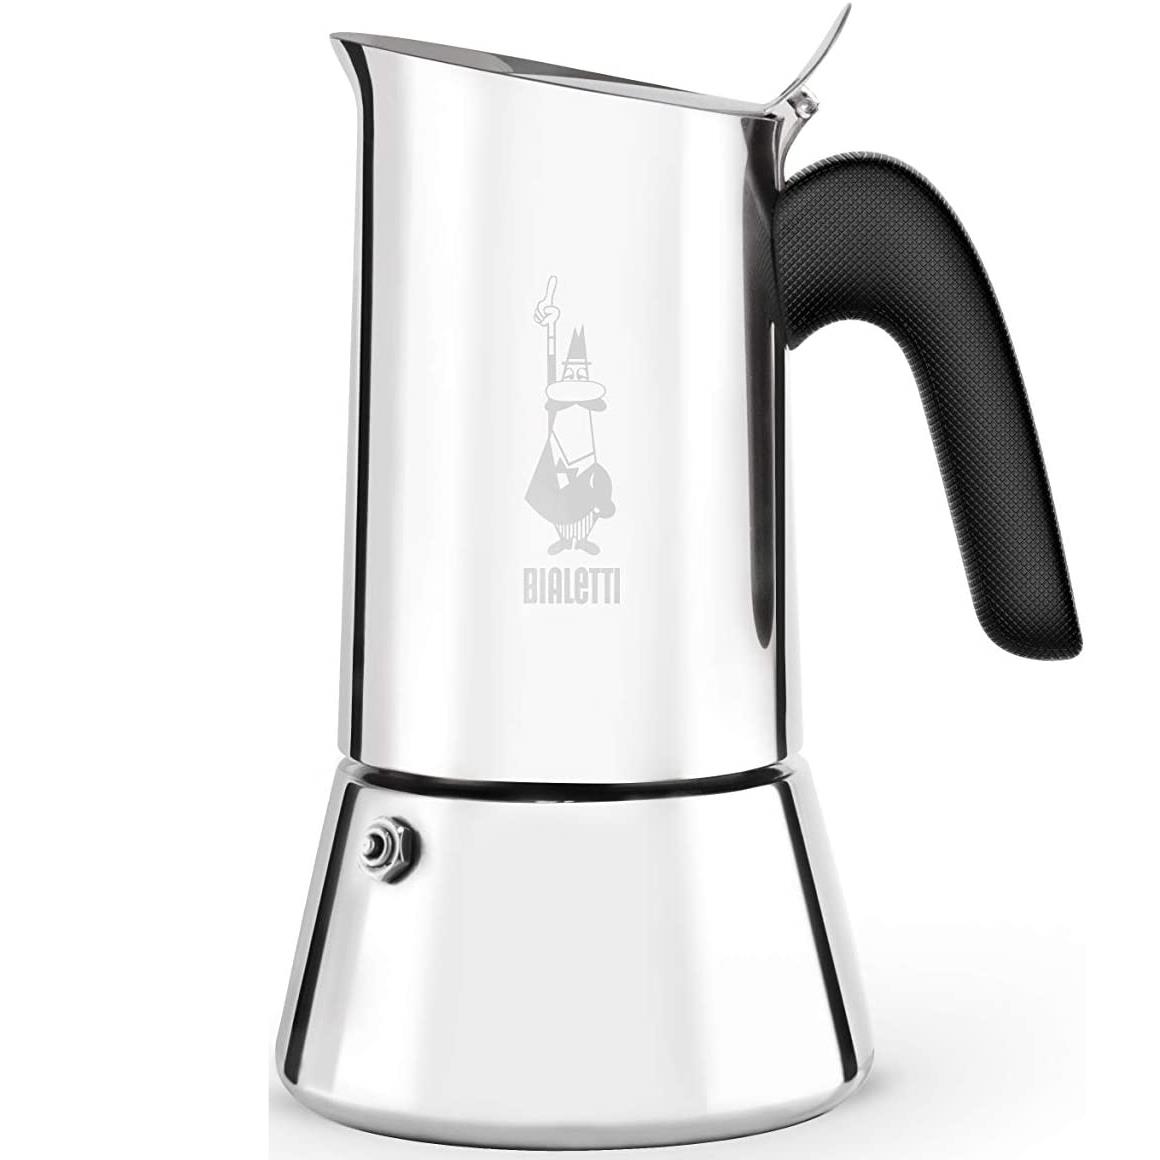 Details zu  Bialetti Venus 2 Cup Stovetop Espresso Coffee Maker, Stainless Steel - Moka Pot umfassende Bewertung